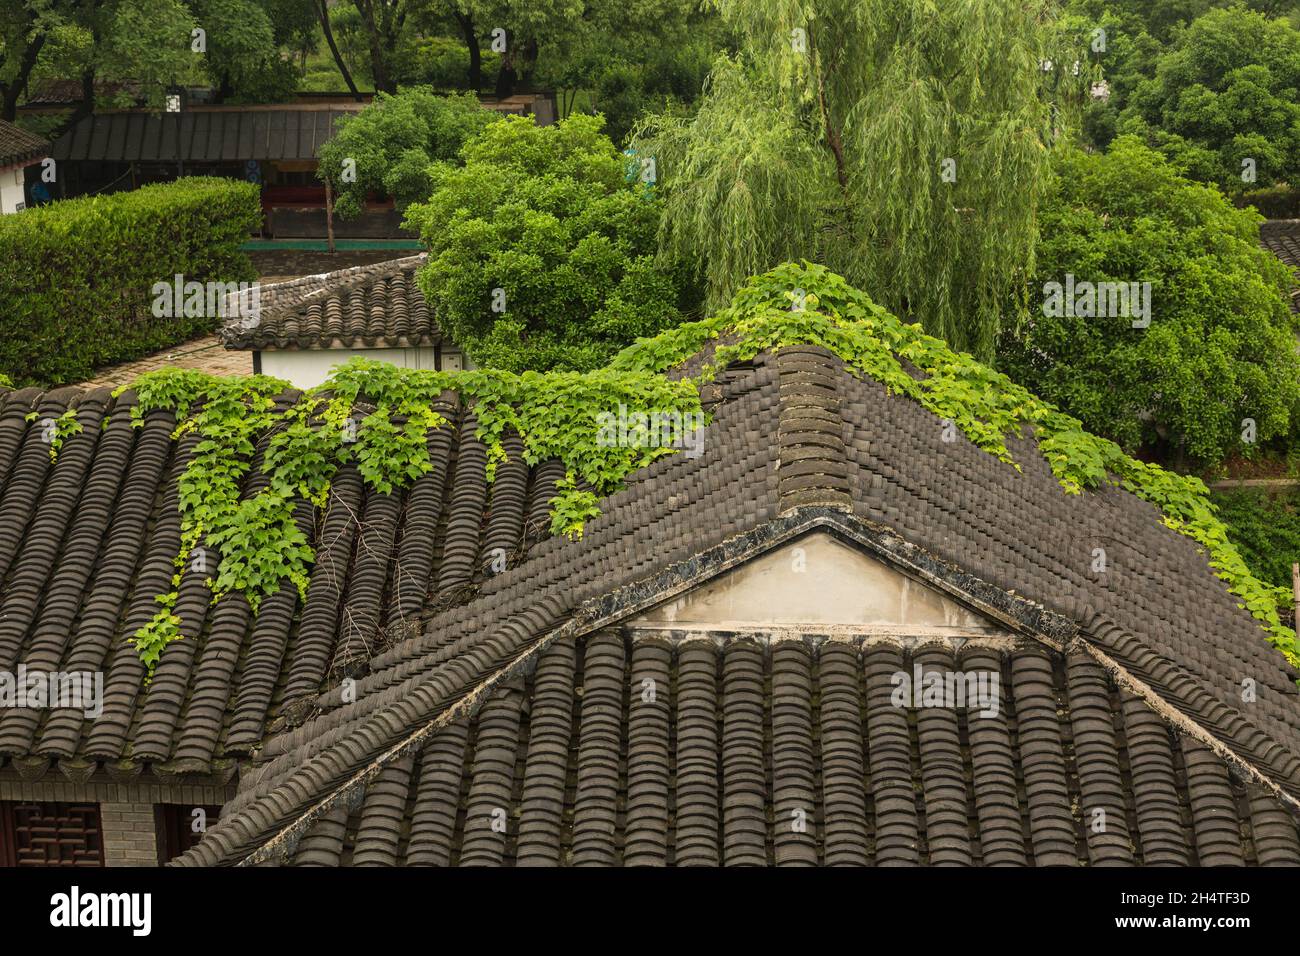 Dettaglio architettonico dei tradizionali tetti di tegole di argilla nella Pan Gate Scenic Area di Suzhou, Cina. Foto Stock